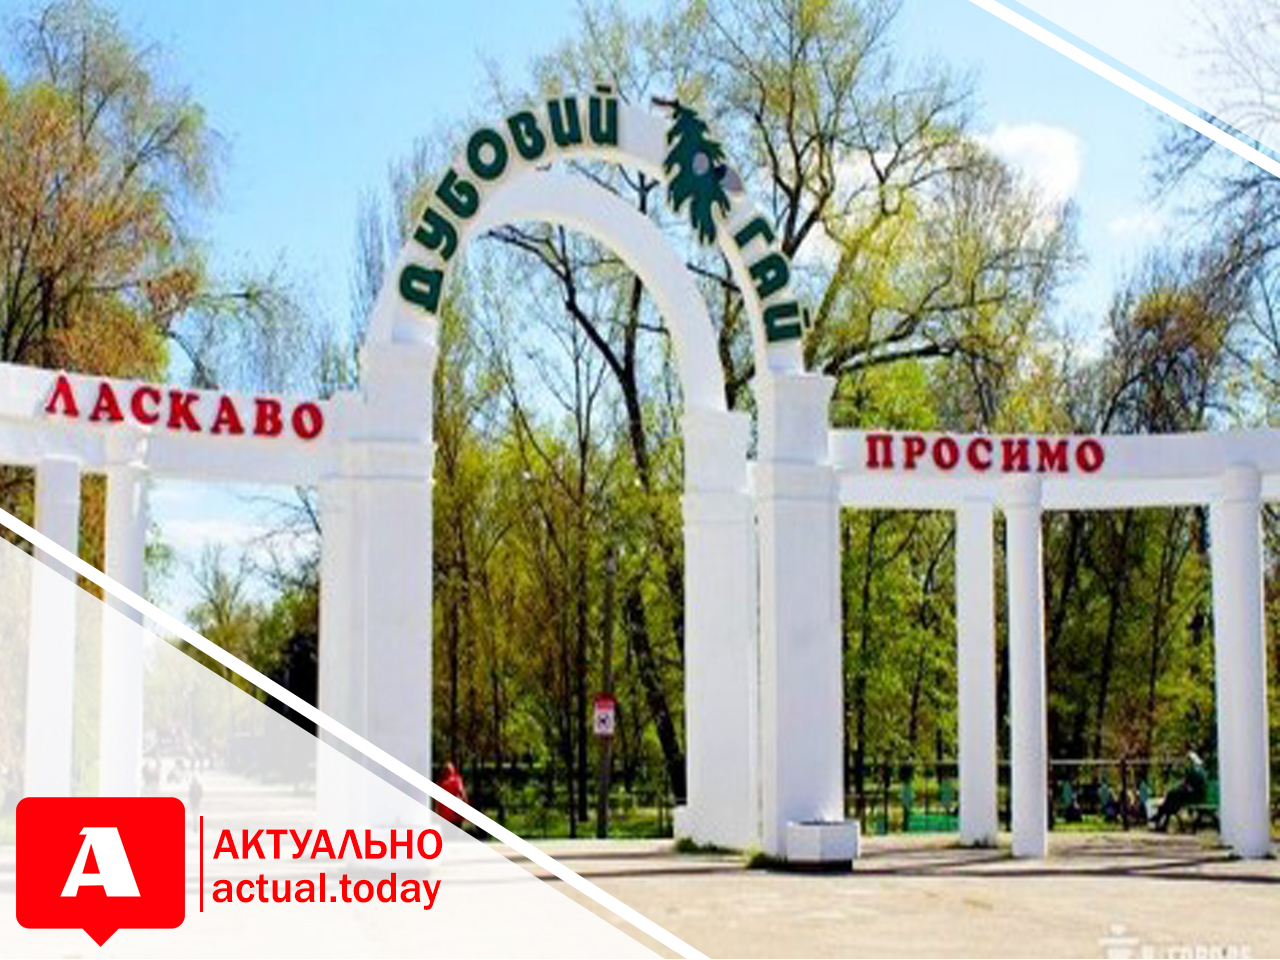 “Несут угрозу жизни”: запорожские активисты требуют проверить аттракционы в парке “Дубовая роща” (ДОКУМЕНТ)